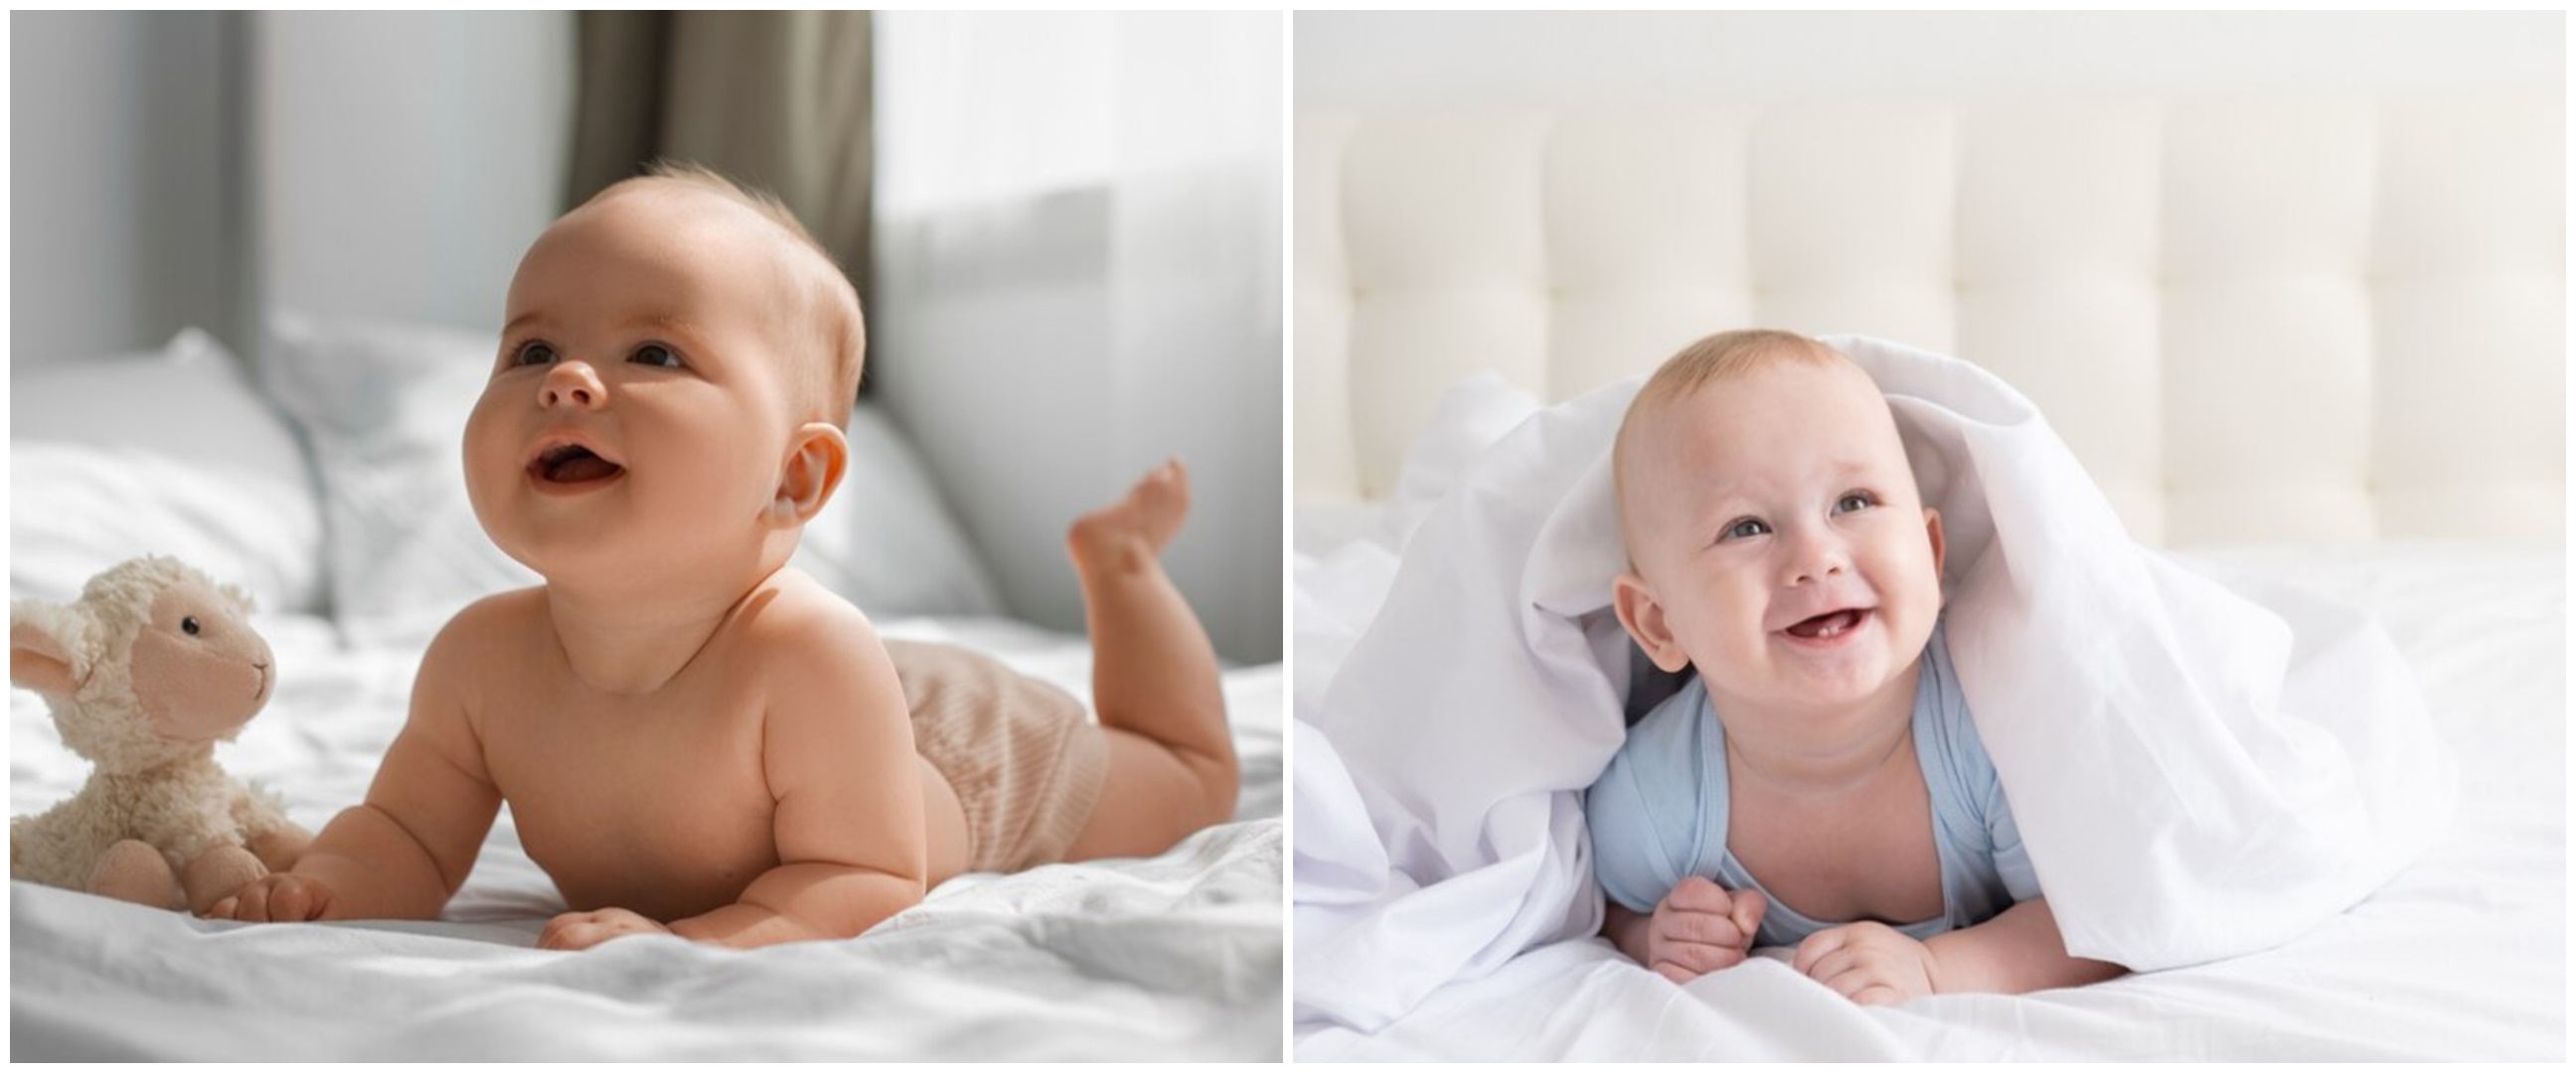 85 Baby quotes beserta artinya untuk bayi baru lahir, bikin rasa syukur dan penuh kegembiraan